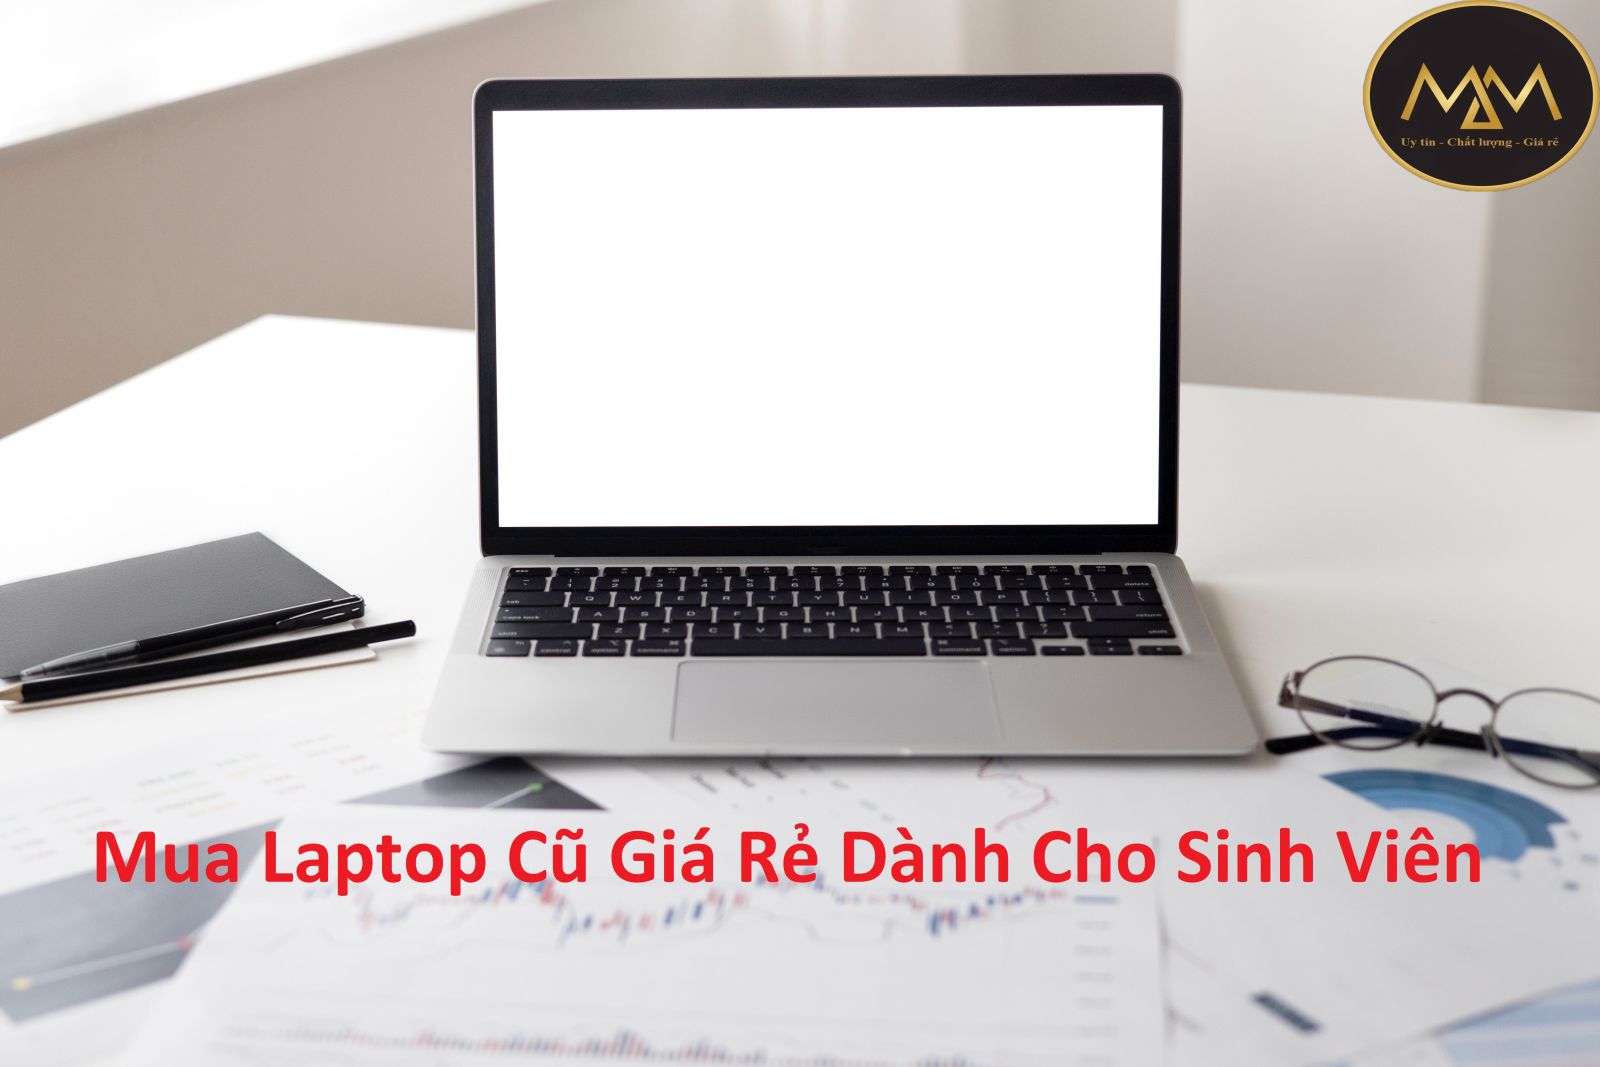 Mua Laptop Cũ Giá Rẻ Dành Cho Sinh Viên